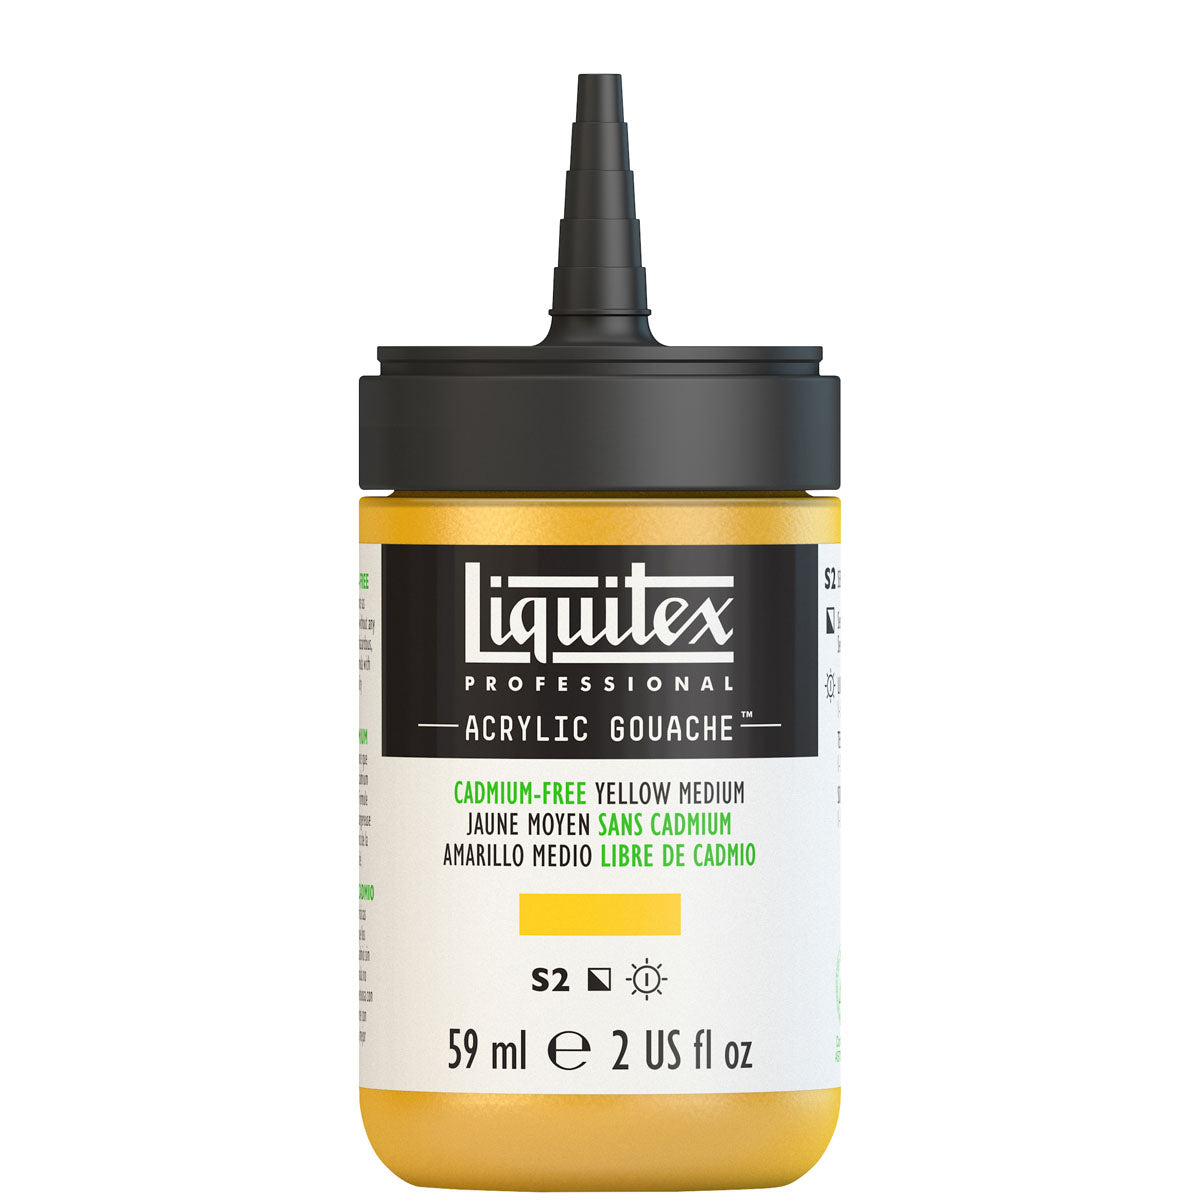 Liquitex - Acryl Gouache 59ml S2 - Cadimum-freies gelbes Medium